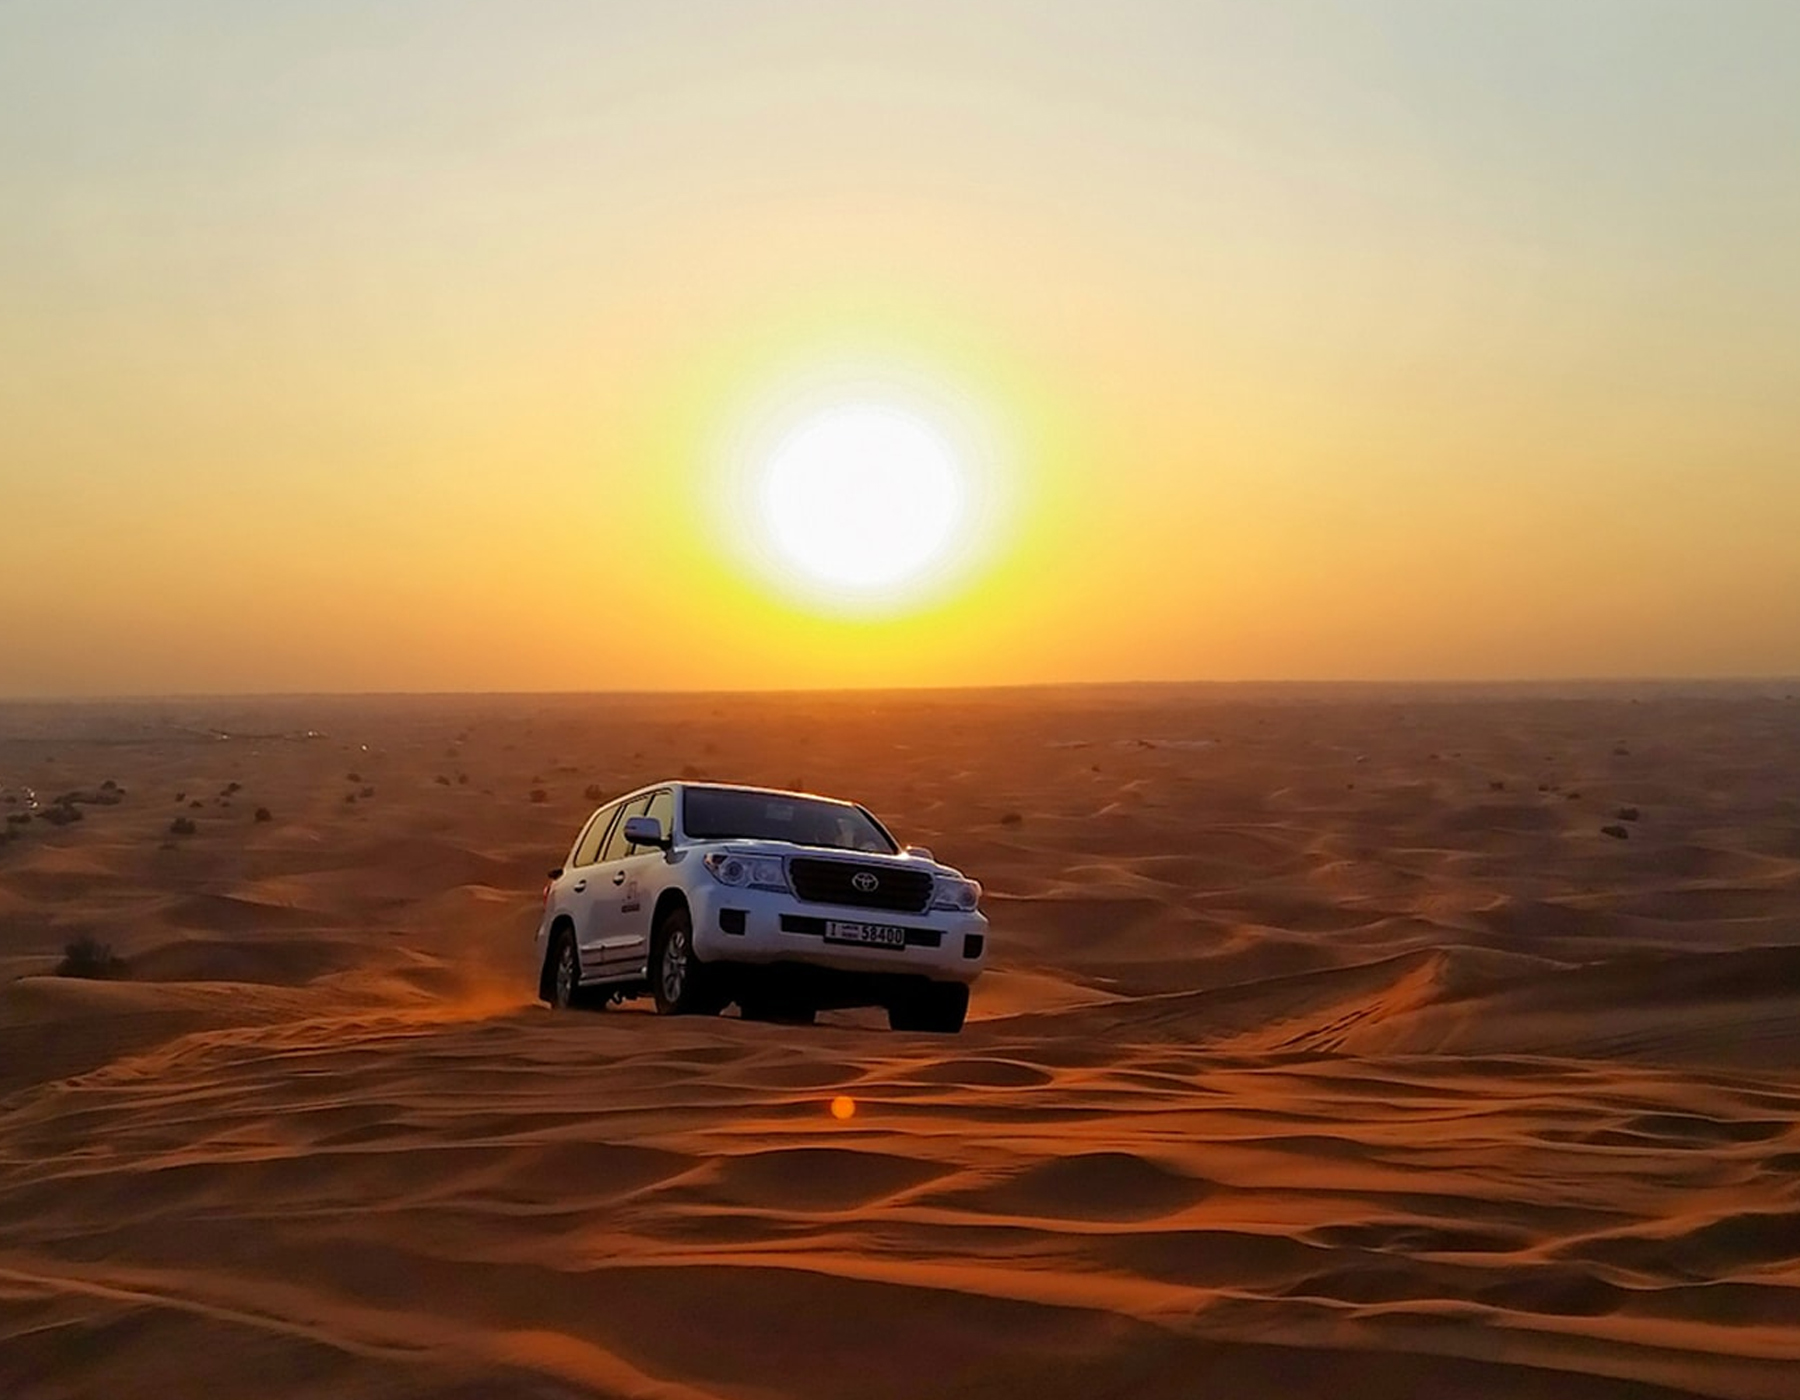 desert safari dubai